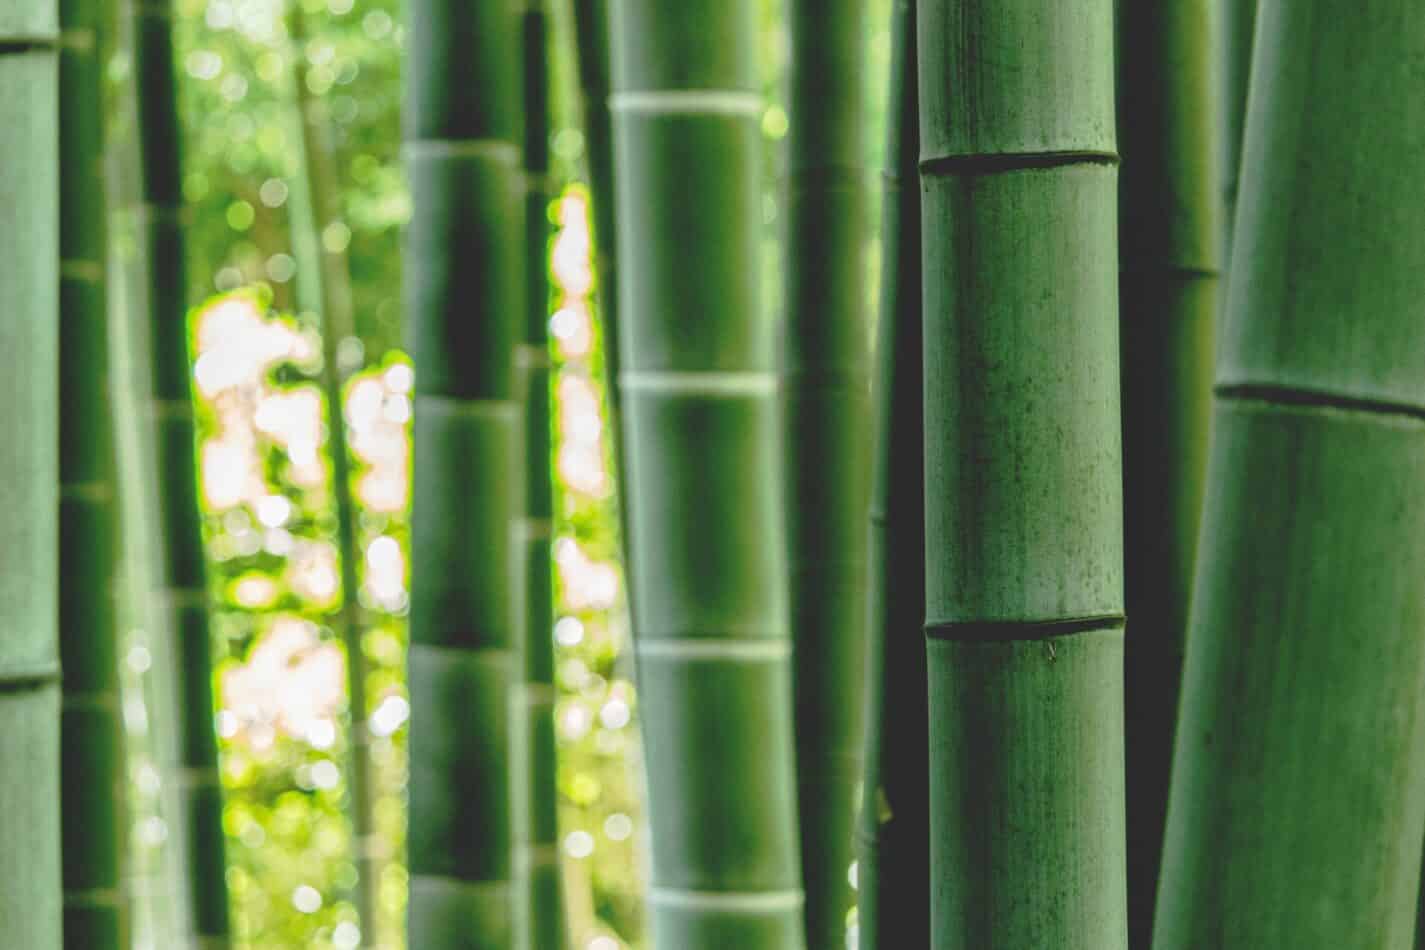 How to Grow Garden Bamboo